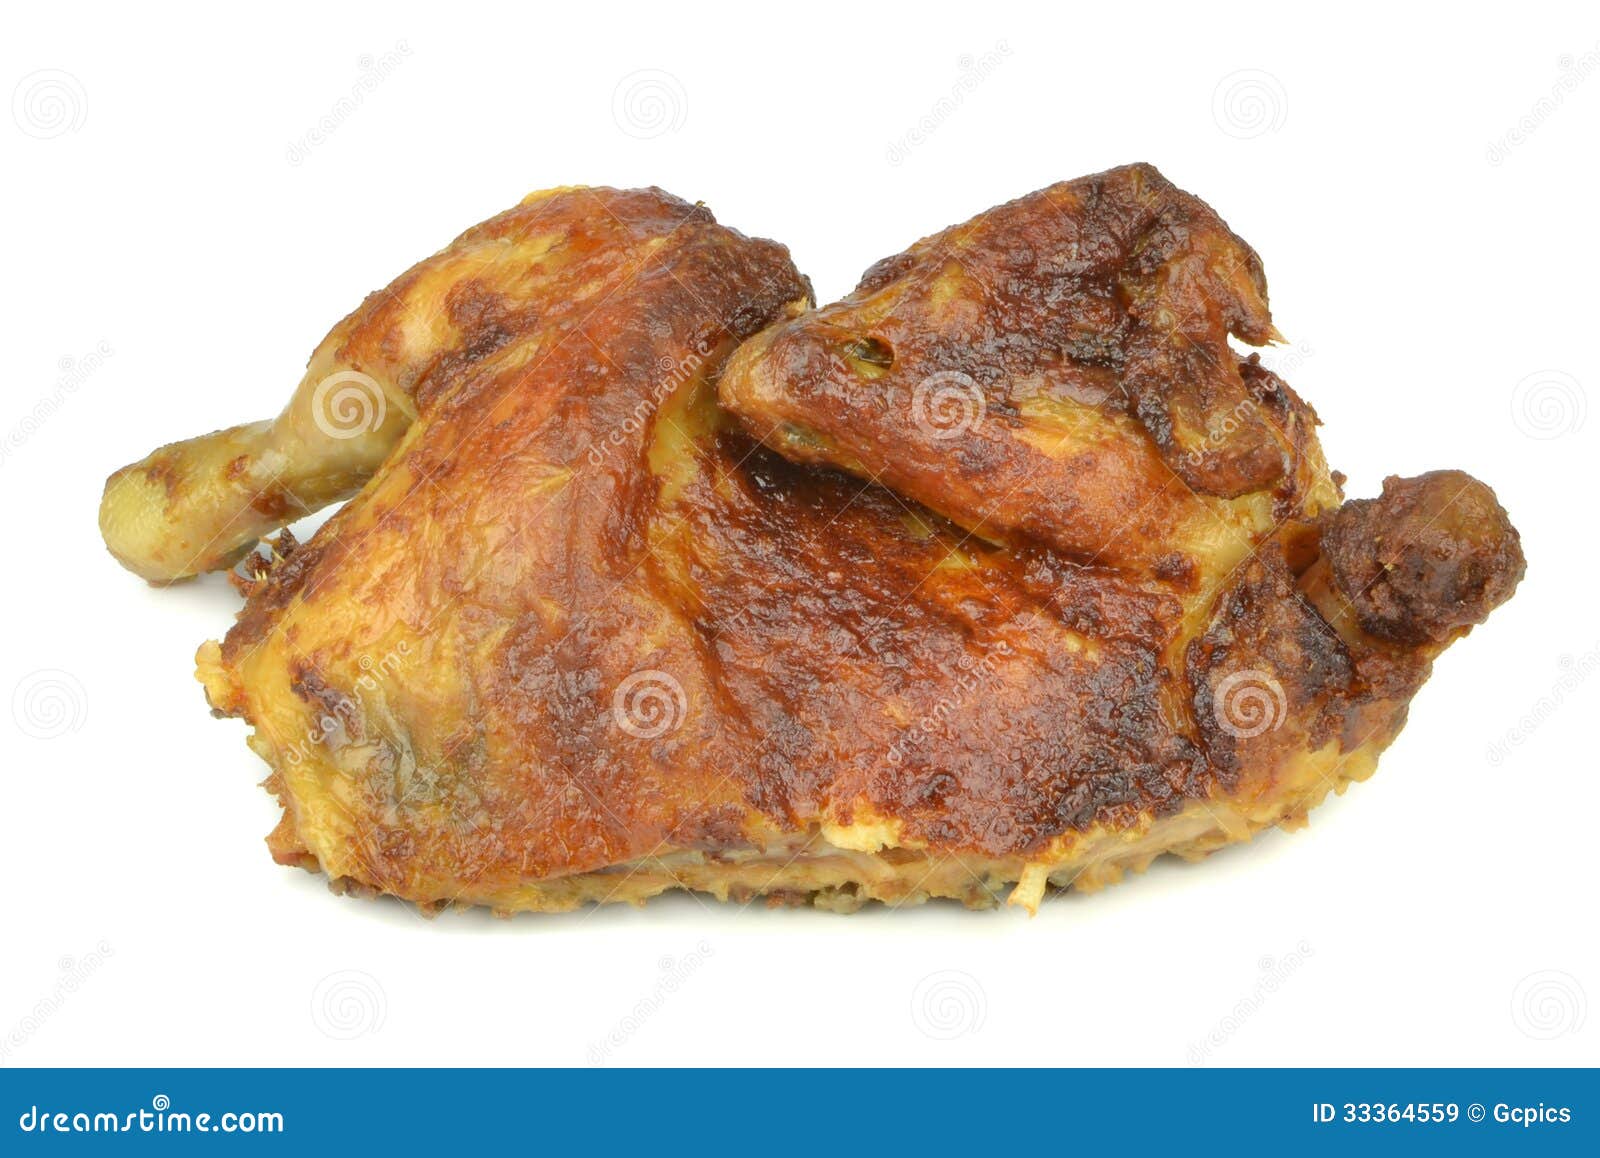 half a grilled chicken